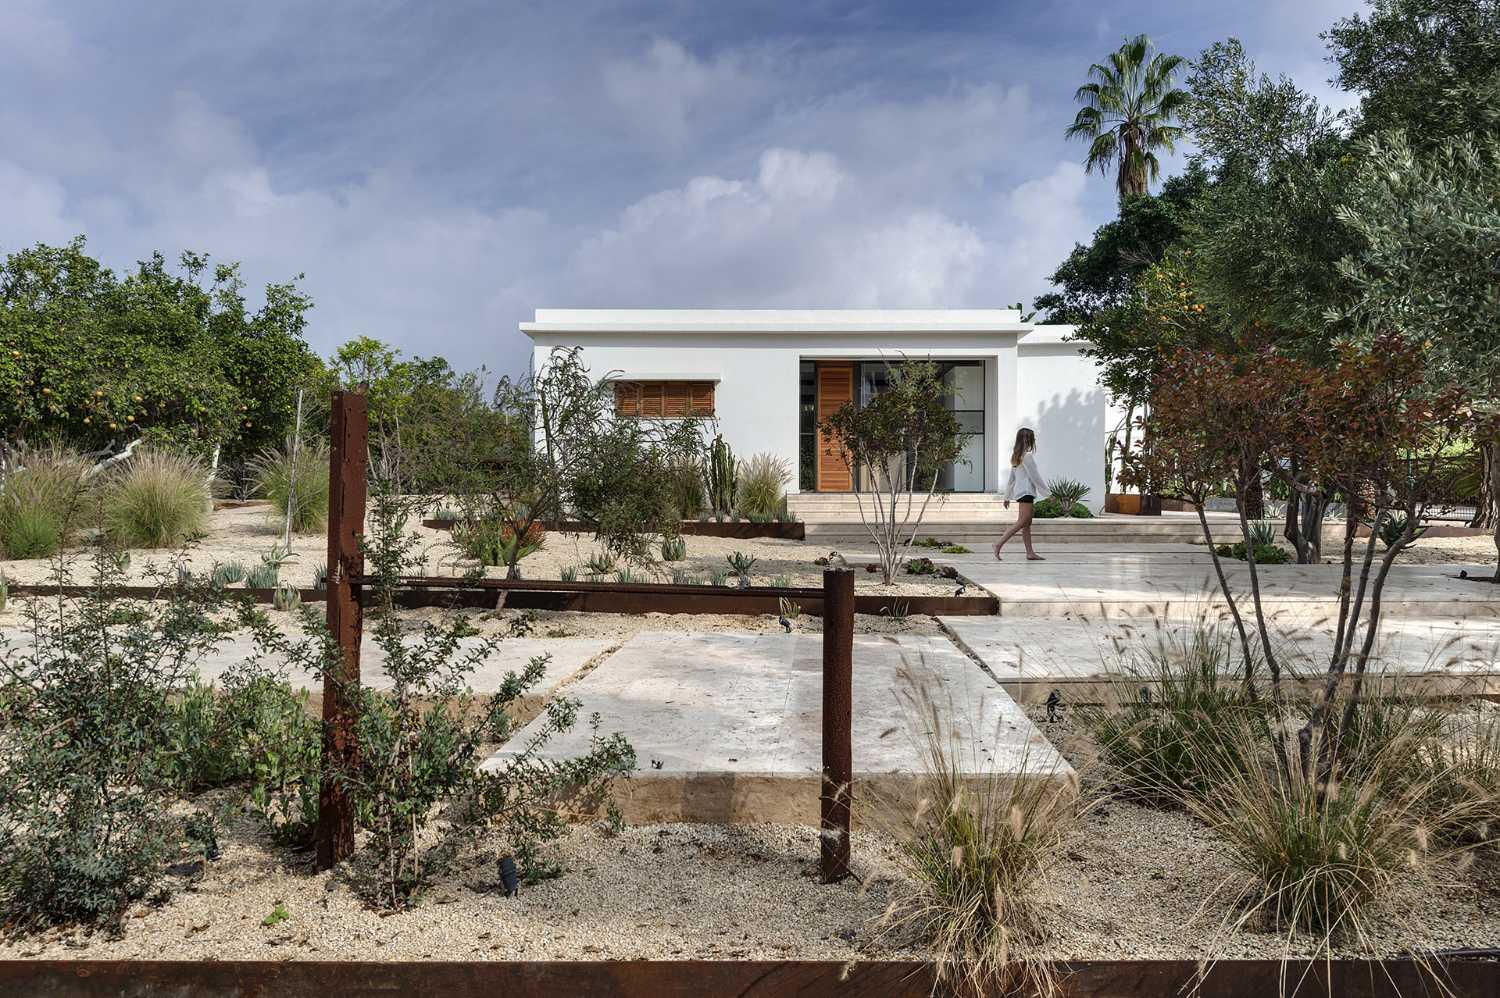 Maison méditerranéenne en Israël. Propriétés parmi des champs verdoyants luxuriants, des vergers d'orangers et des plantations de cactus